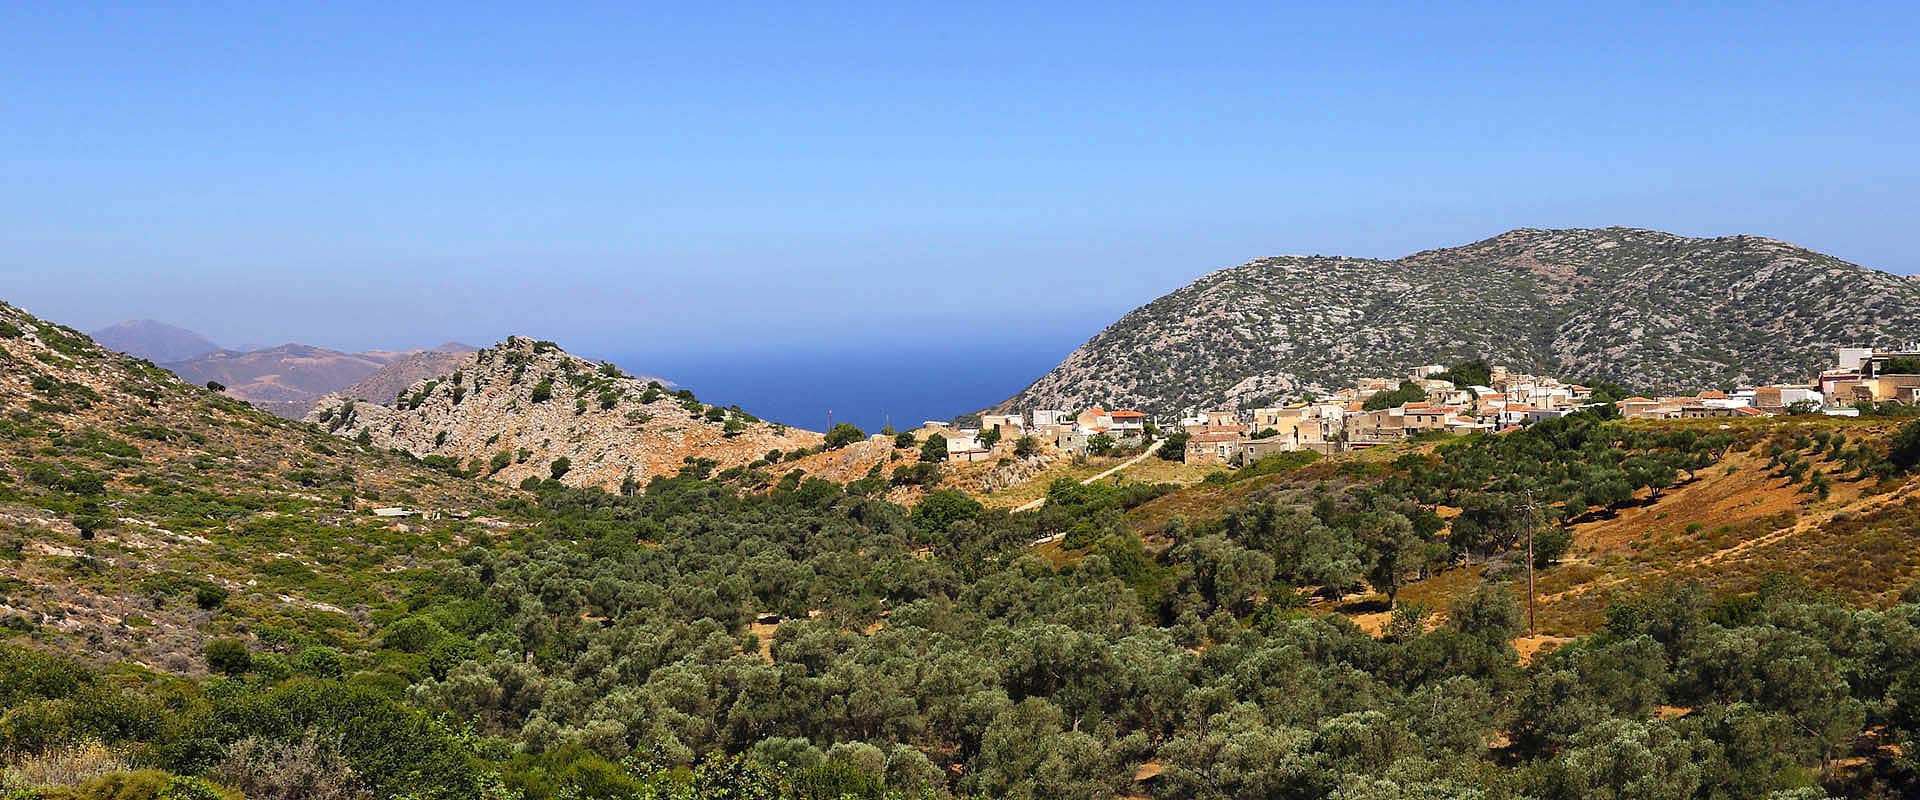 Ville di hotel ecoturismo a Creta Grecia